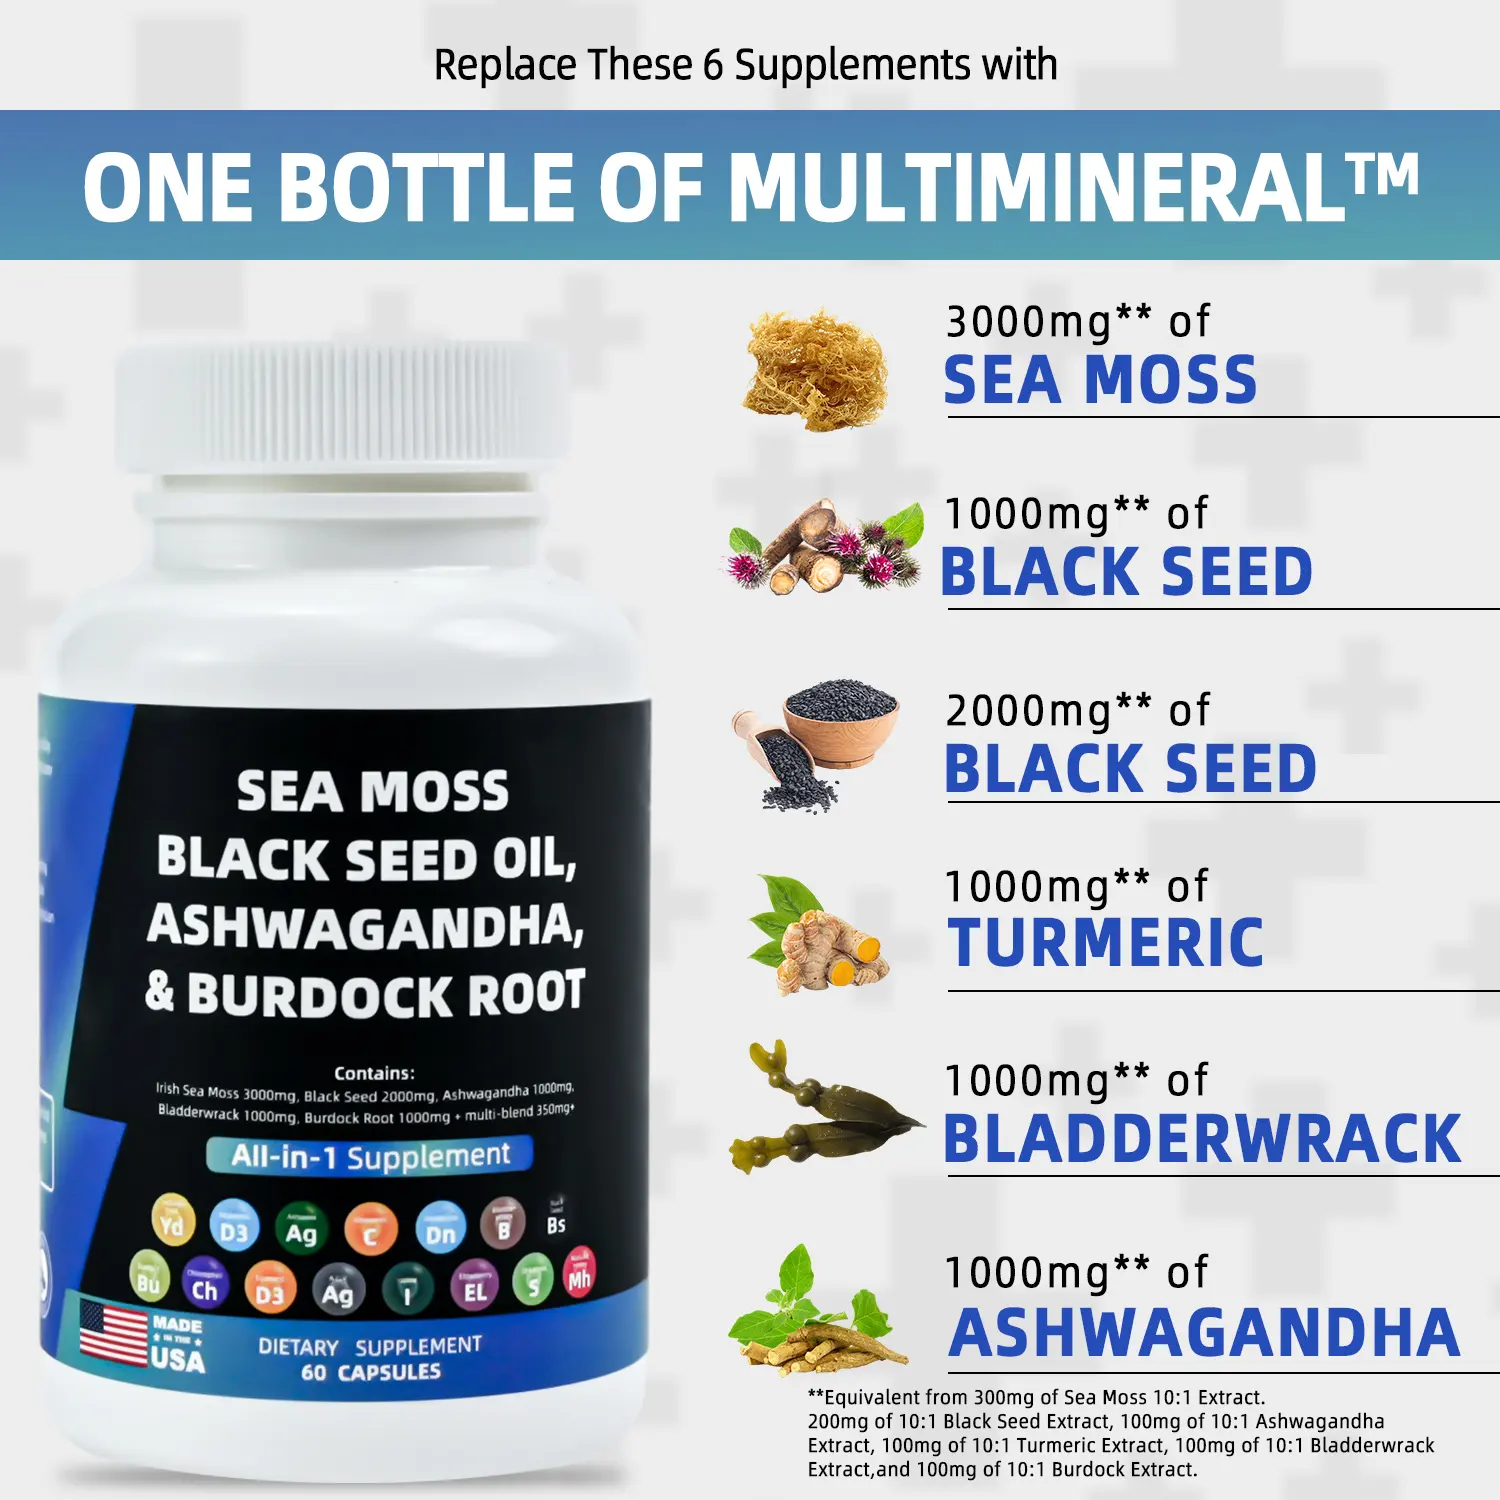 Extrait de mousse de mer complément à base de plantes ashwagandha huile de graine noire racine de bardane capsules de mousse de mer végétaliennes biologiques personnalisées